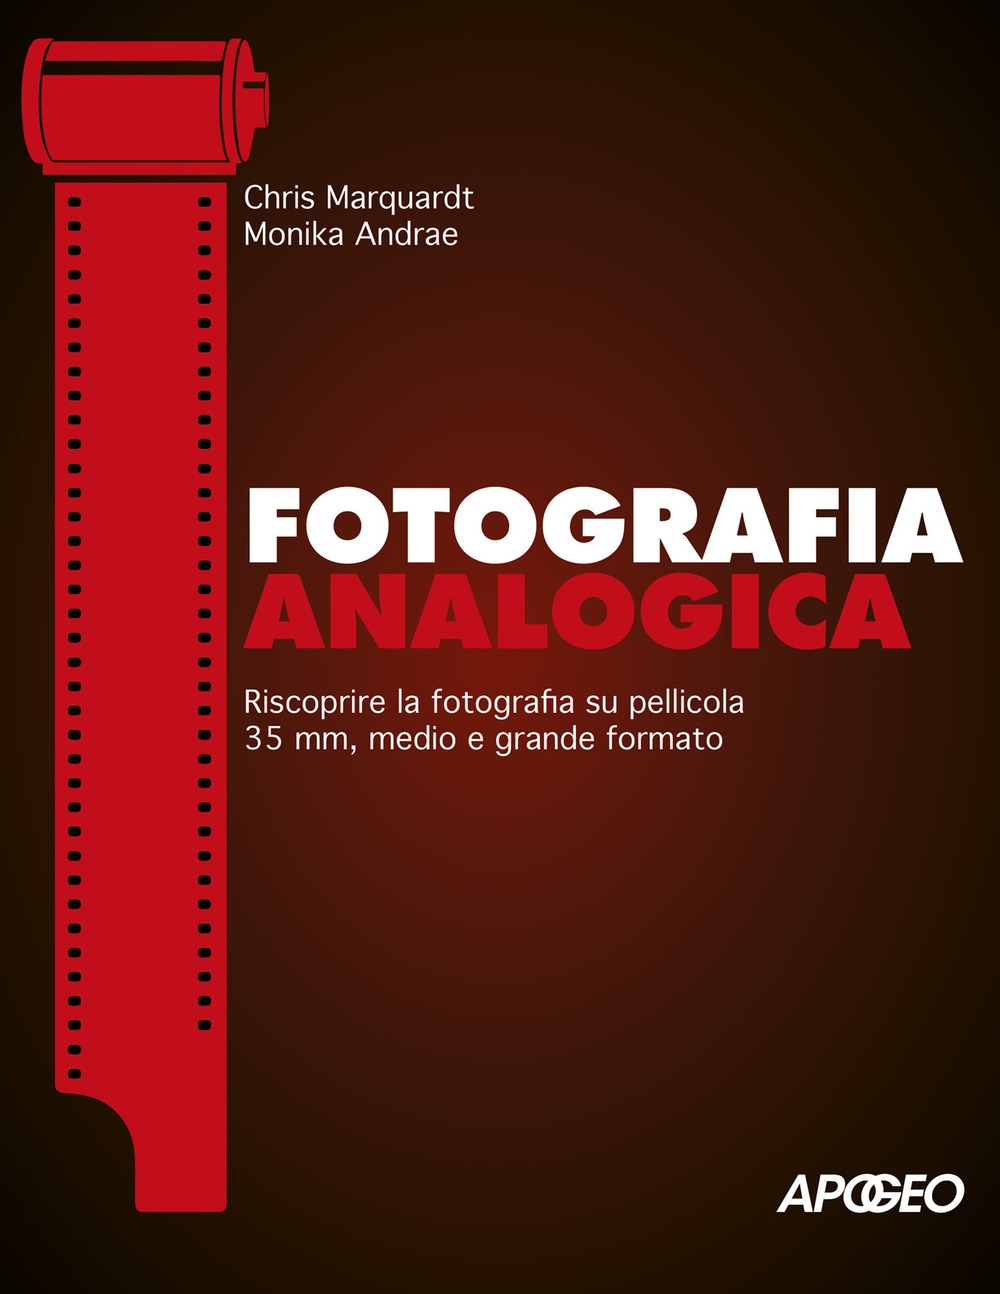 Fotografia analogica. Riscoprire la fotografia su pellicola 35mm, medio e  grande formato - Chris Marquardt - Monika Andrae - - Libro - Apogeo 